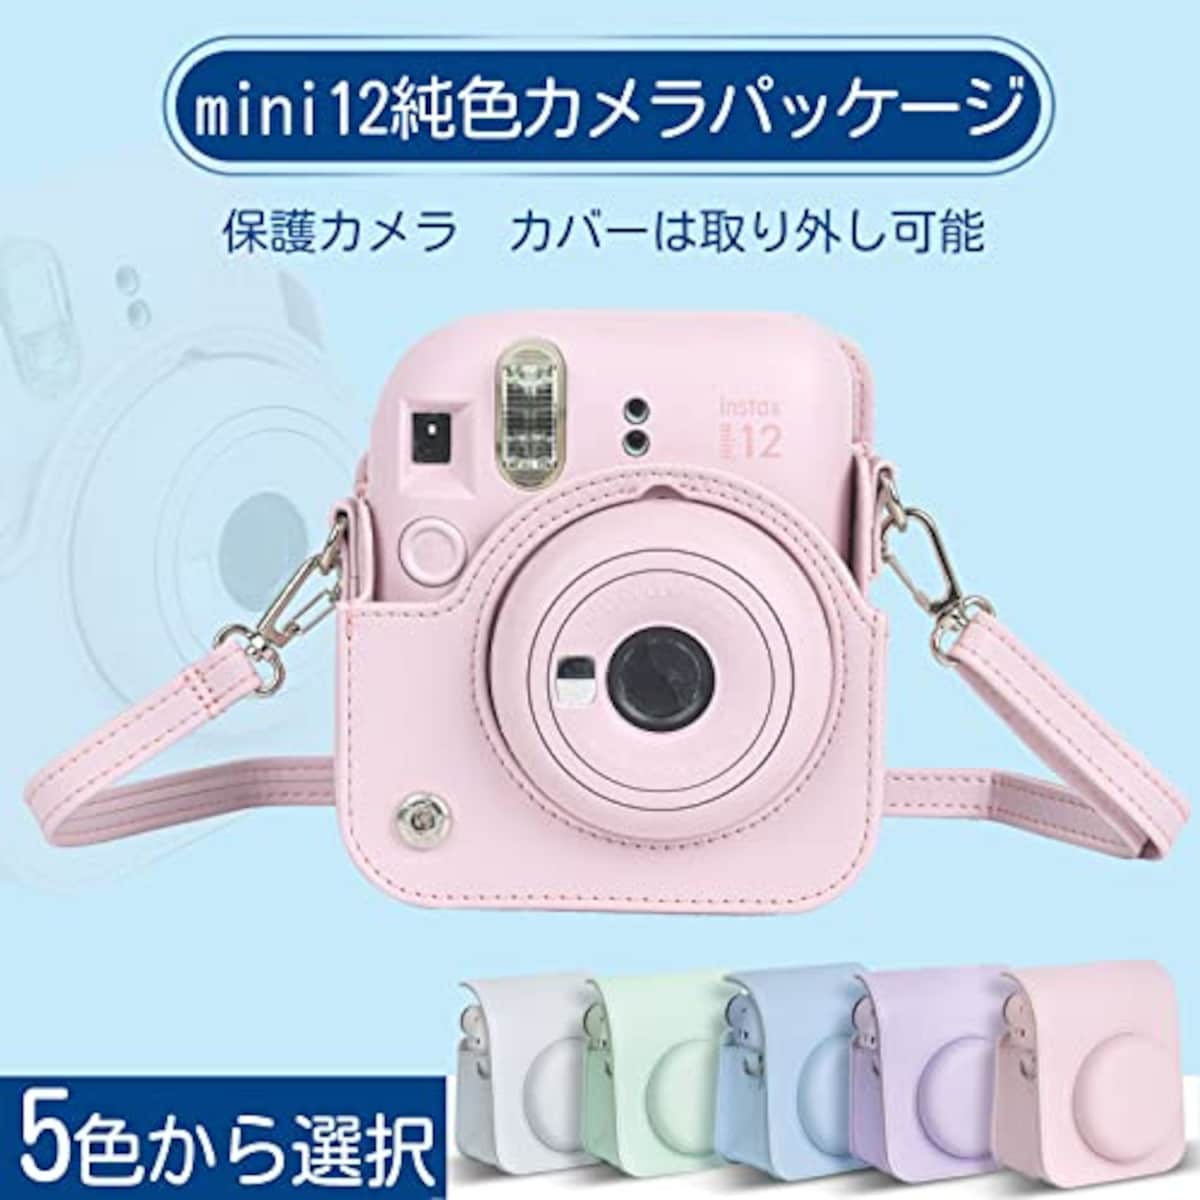  チェキケース instax mini 12用 カメラケース mini12 チェキ カバー Fujifilm チェキ ケース 新モデル 全面保護 傷つけ防止 携帯便利 ショルダーストラップ付き PUレザー (ピンク)画像5 